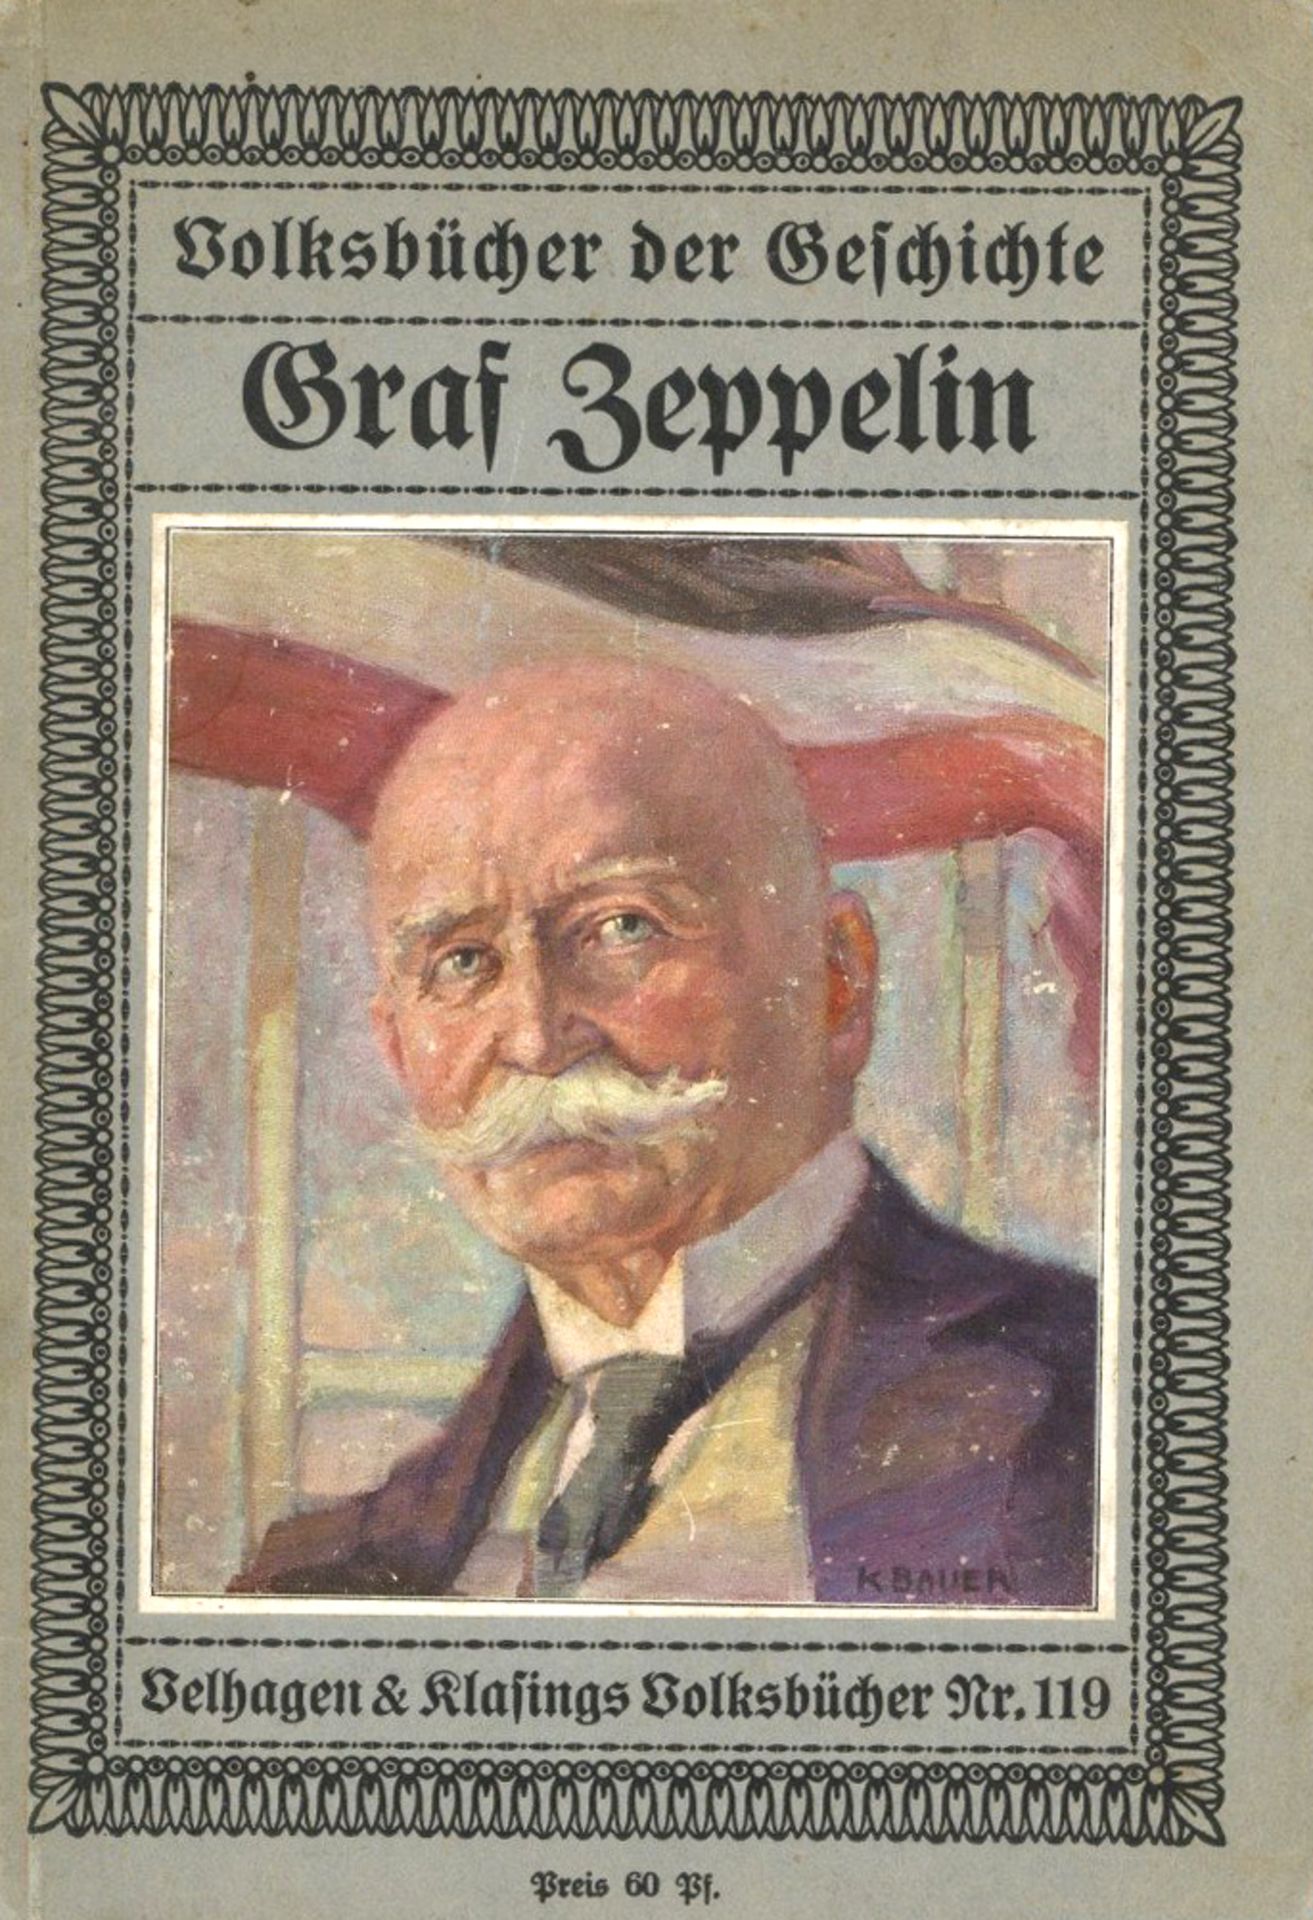 Buch Zeppelin Buch Graf Zeppelin von Freiherr von Rummel, Walter ca. 1920, Verlag Velhagen und